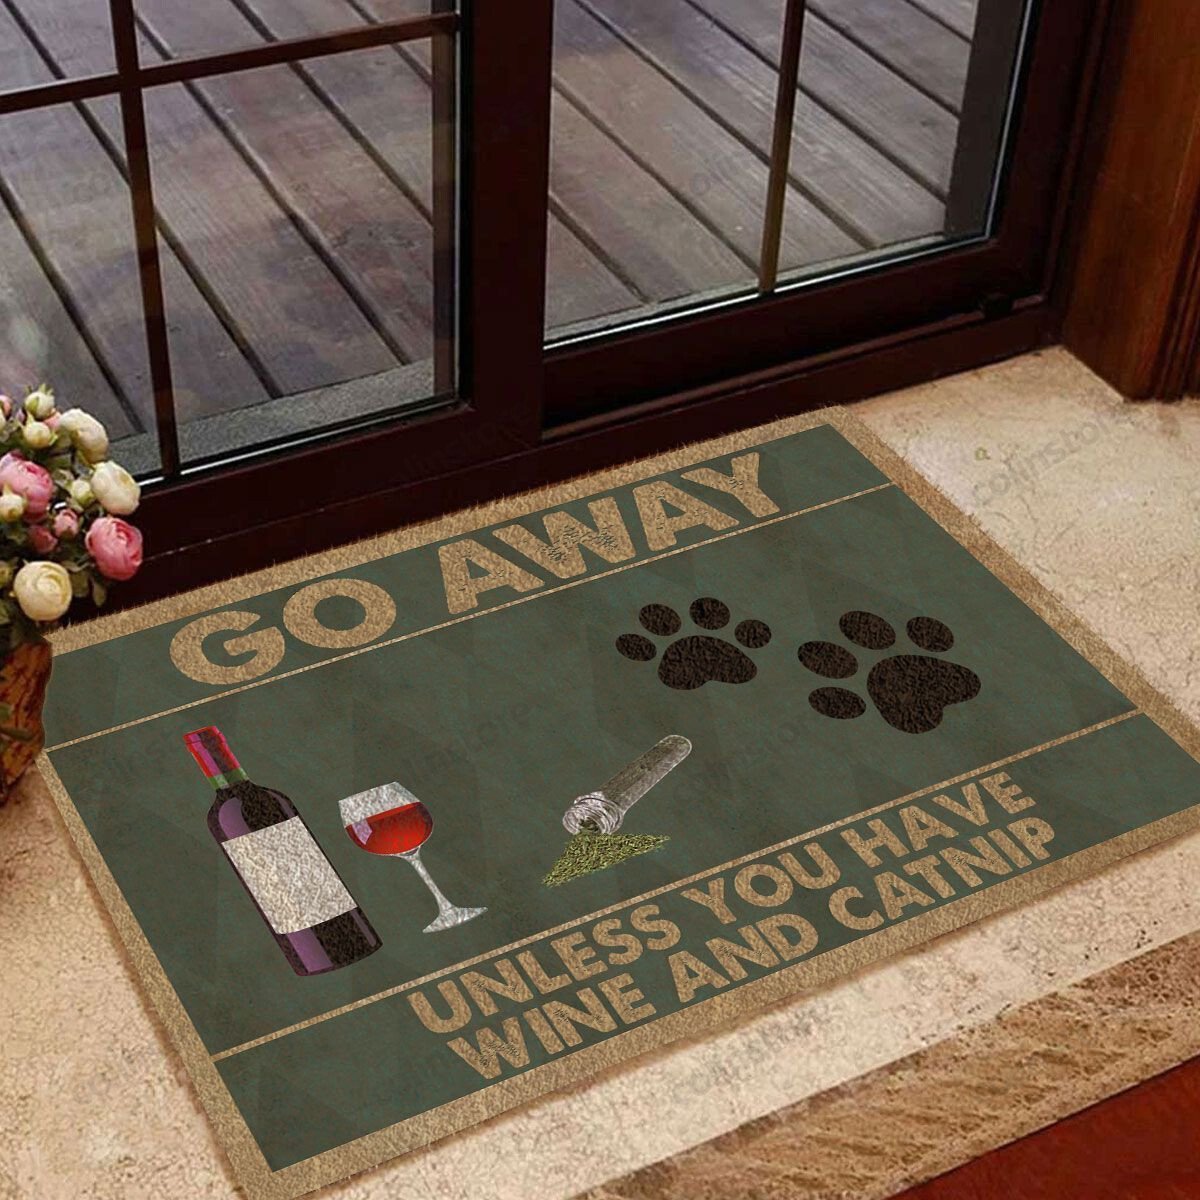 Go Away Unless You Have Wine And Catnip Funny Outdoor Indoor Wellcome Doormat